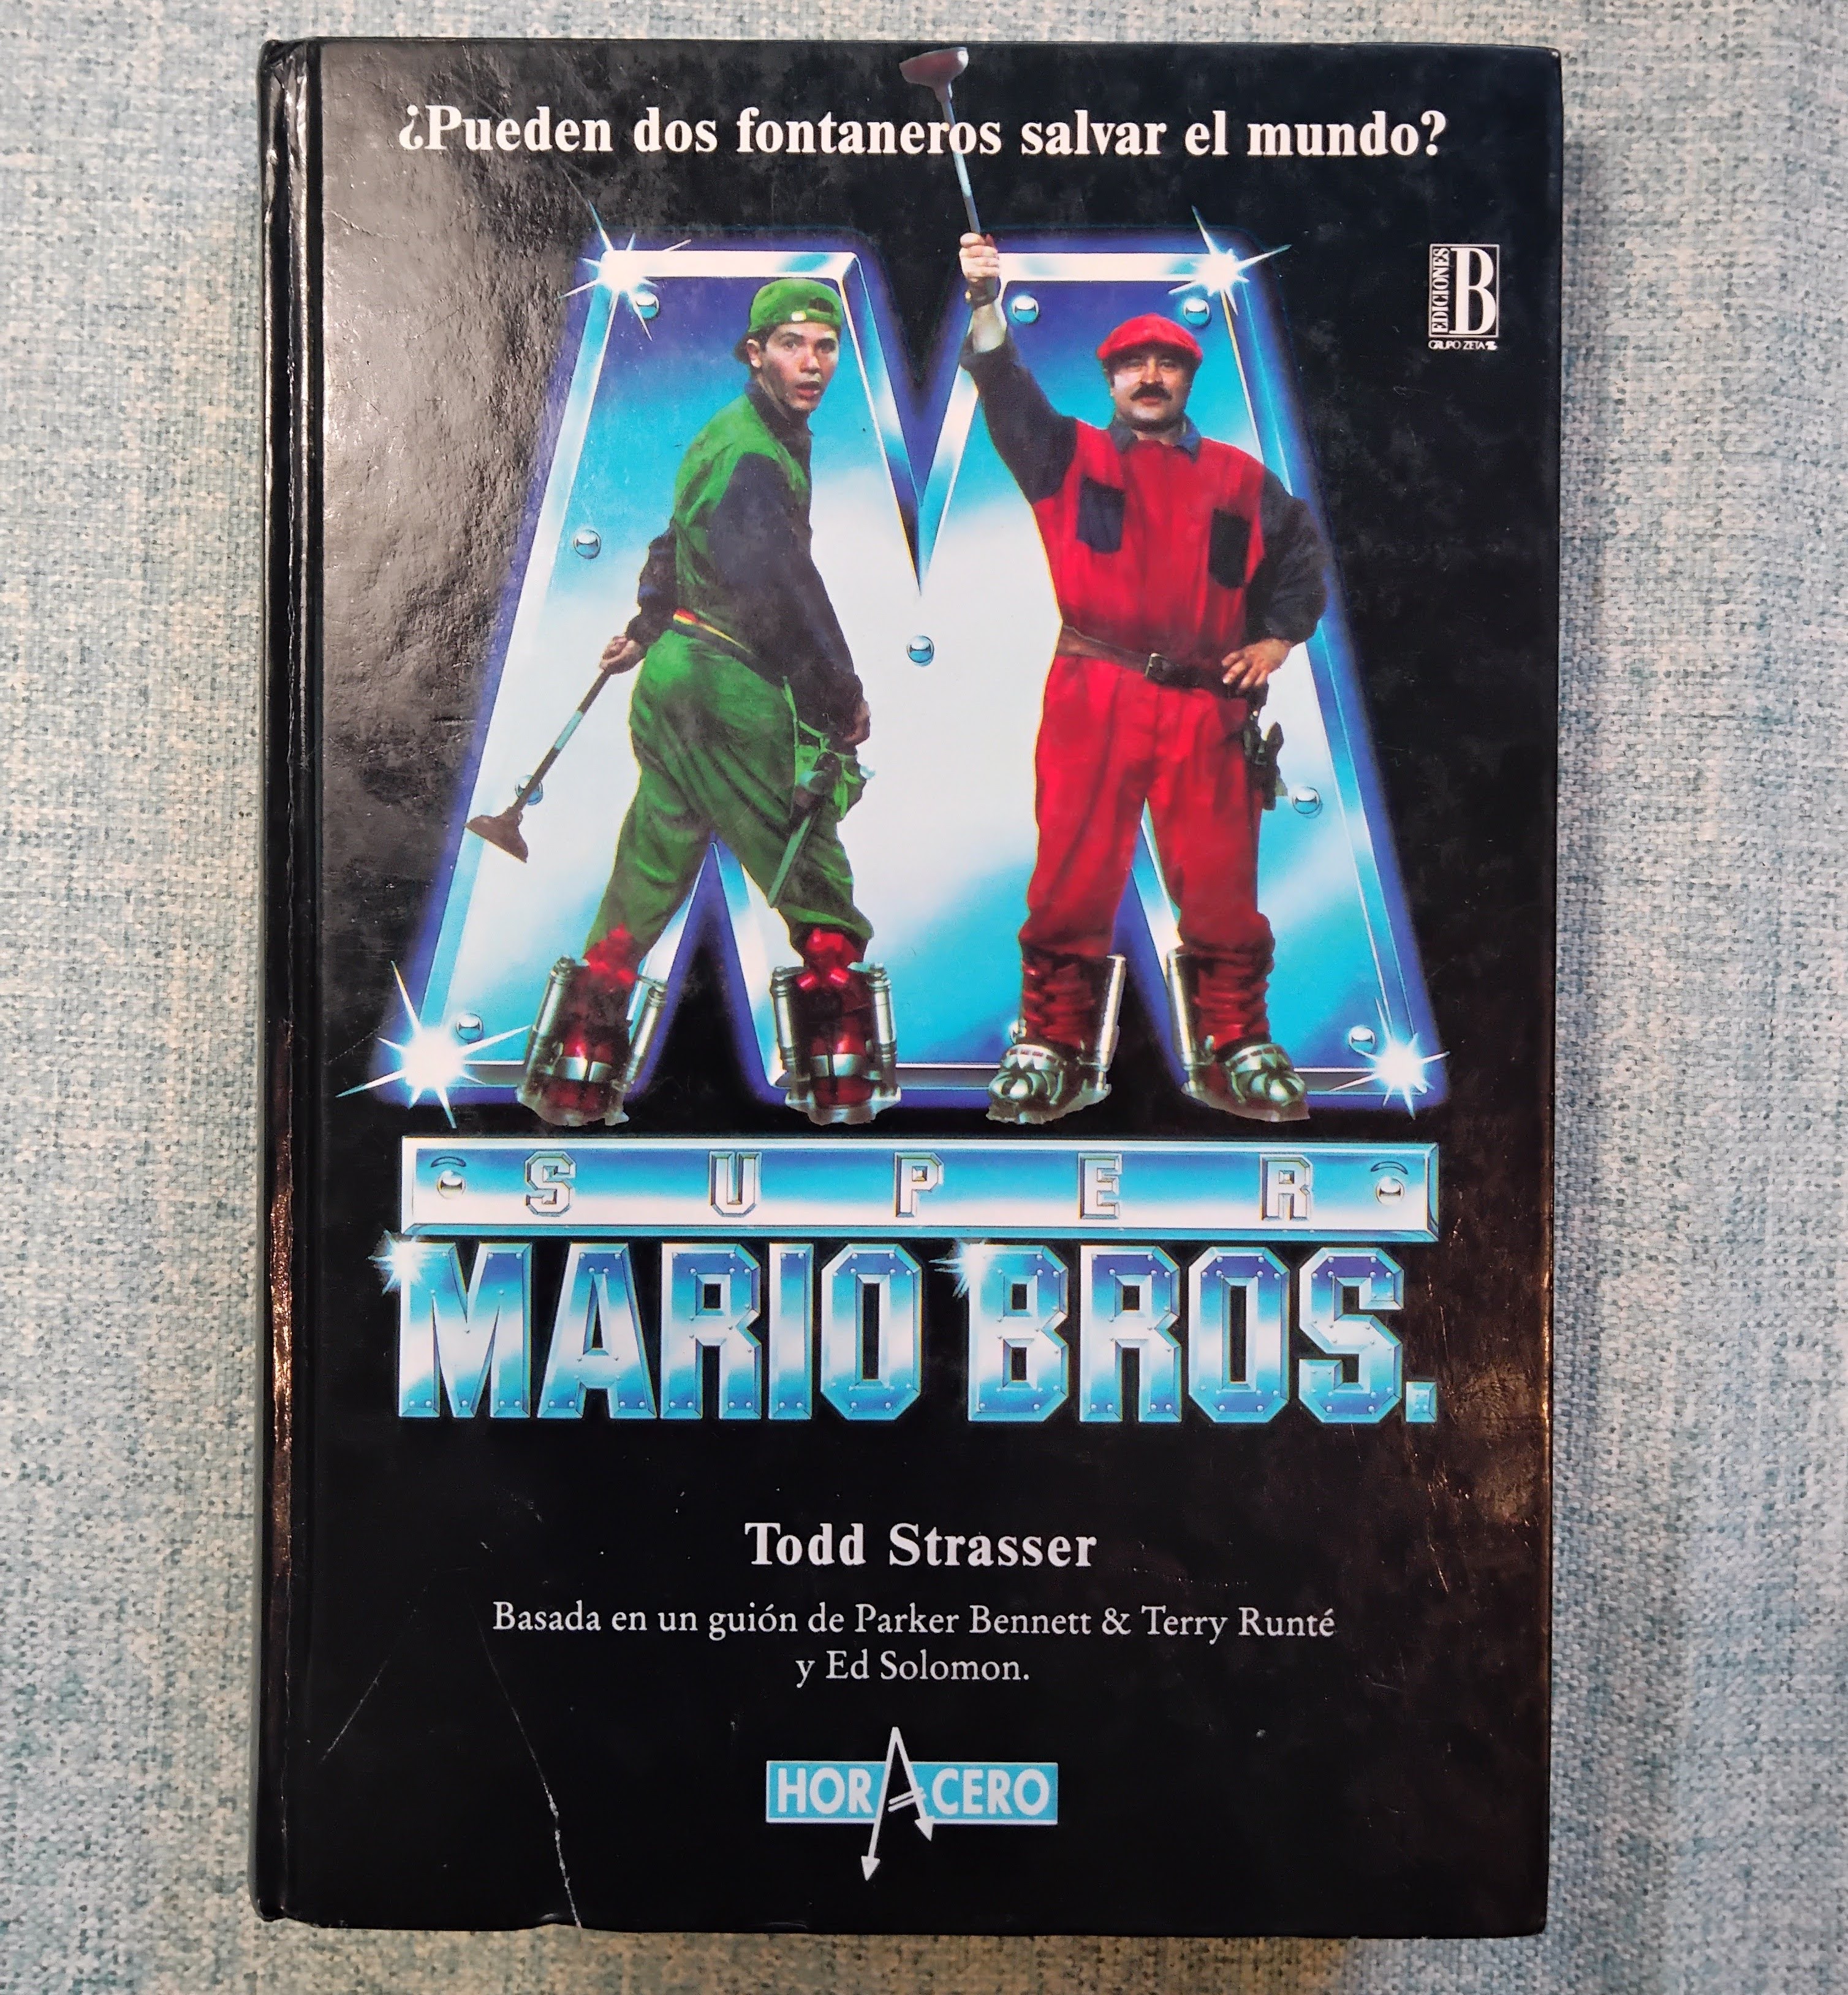 Portada del libro de la película de Mario Bros de 1993.